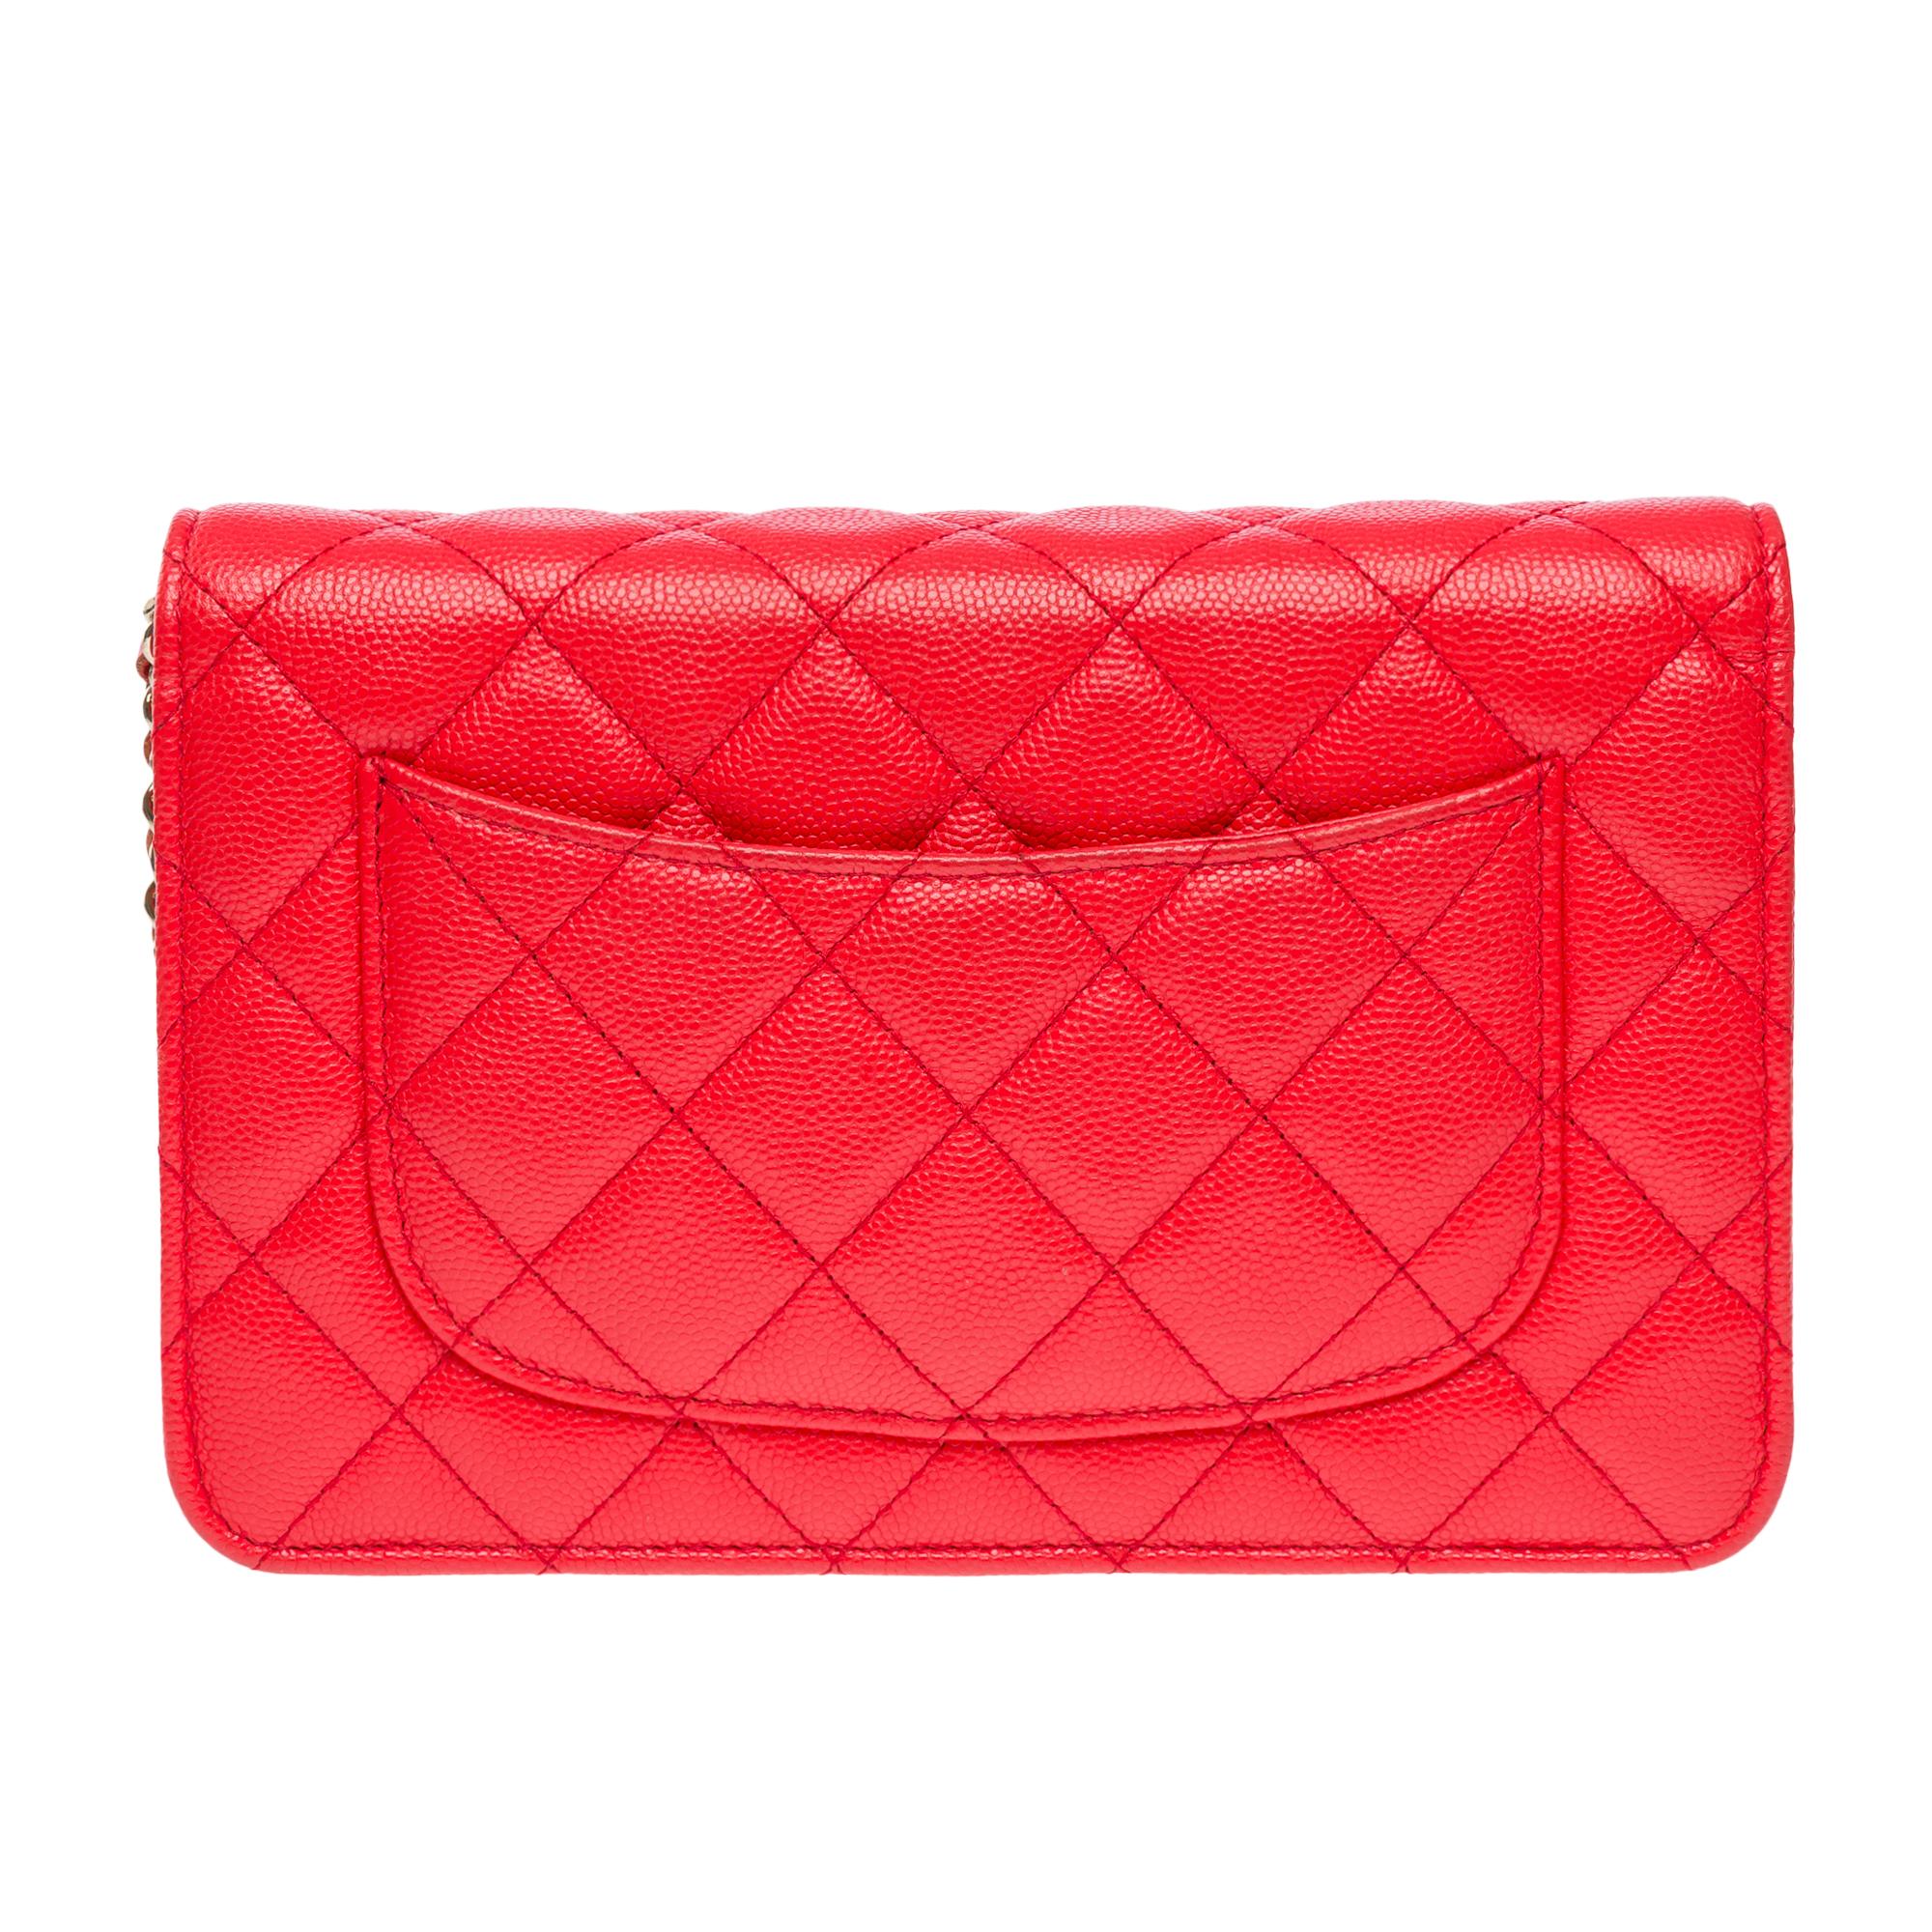 Portefeuille Chanel sur chaîne (WOC)  sac à bandoulière en cuir Caviar matelassé rouge, GHW Pour femmes en vente